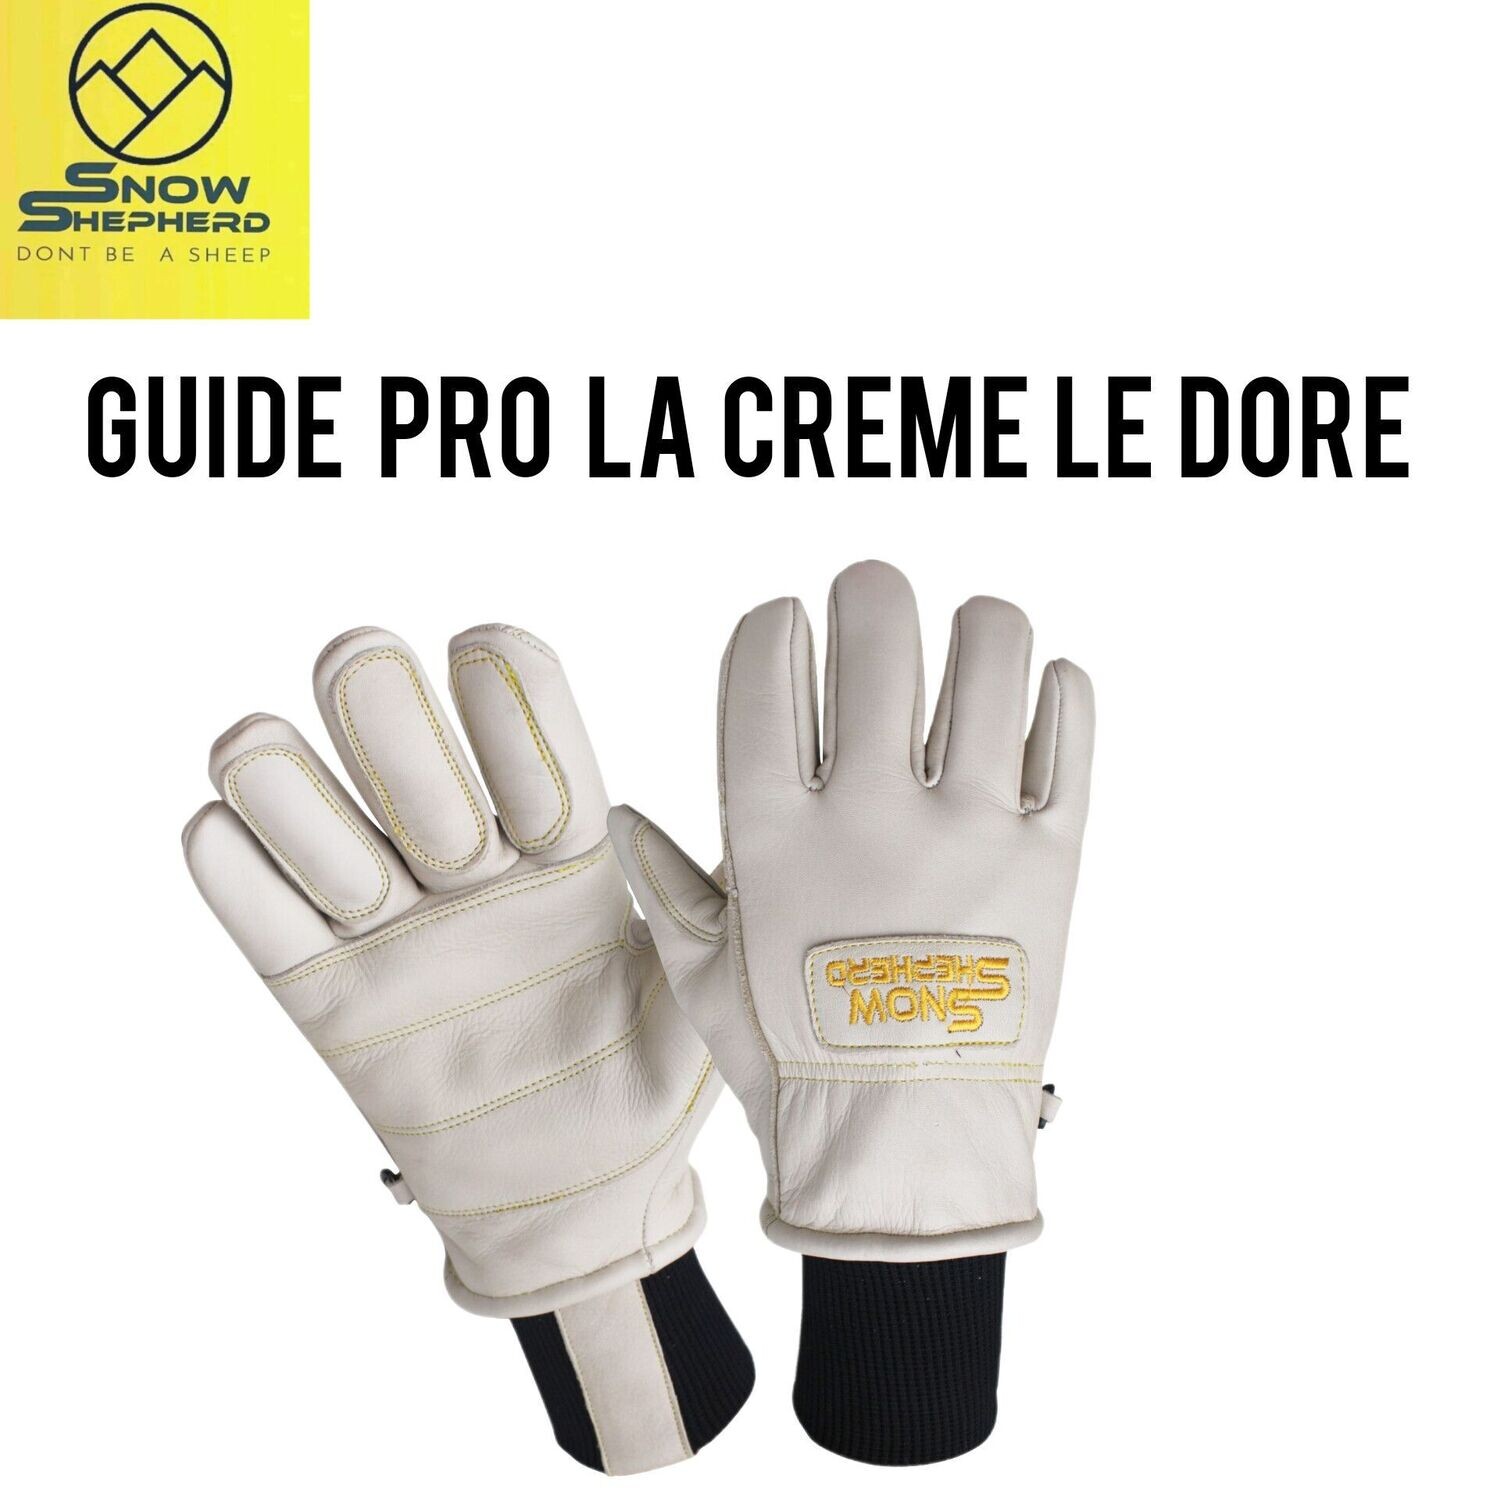 Guide Pro Glove La Creme Le Dore